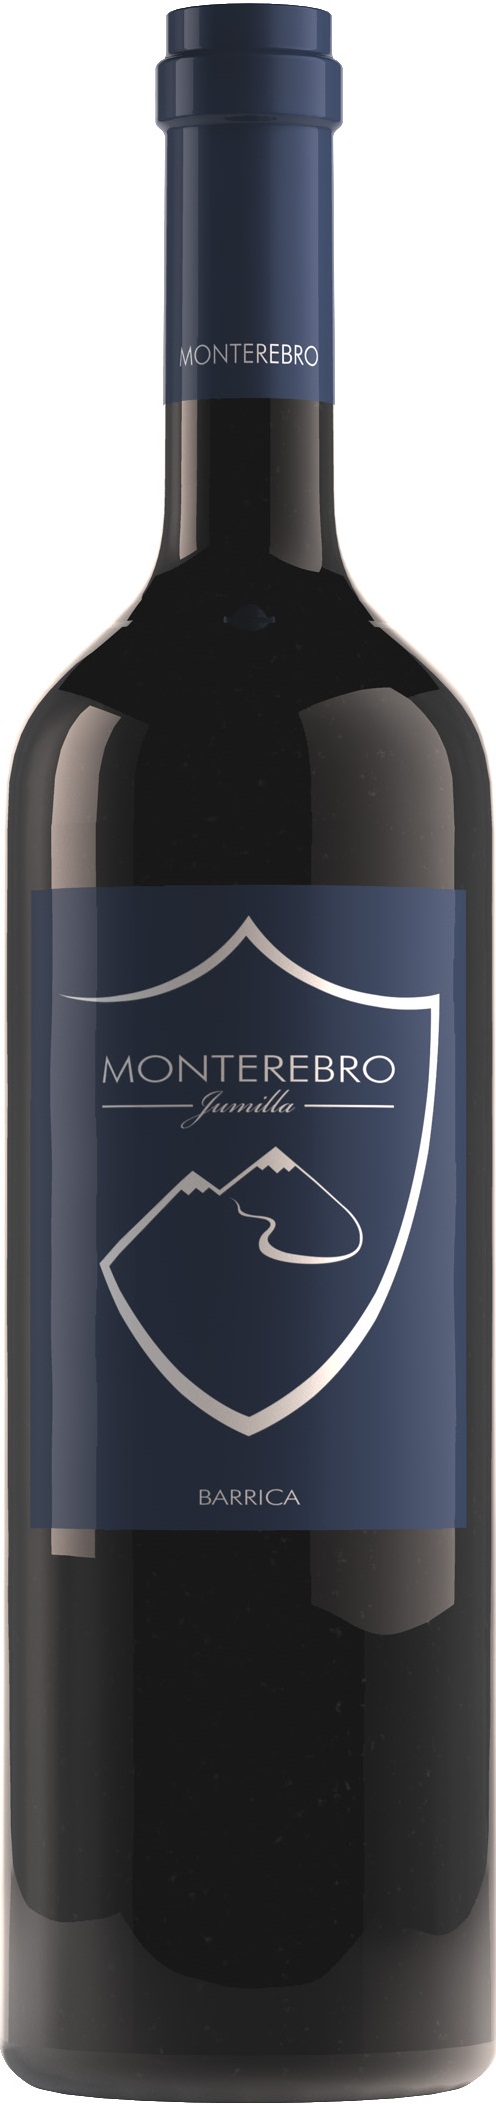 Logo del vino Monterebro Barrica